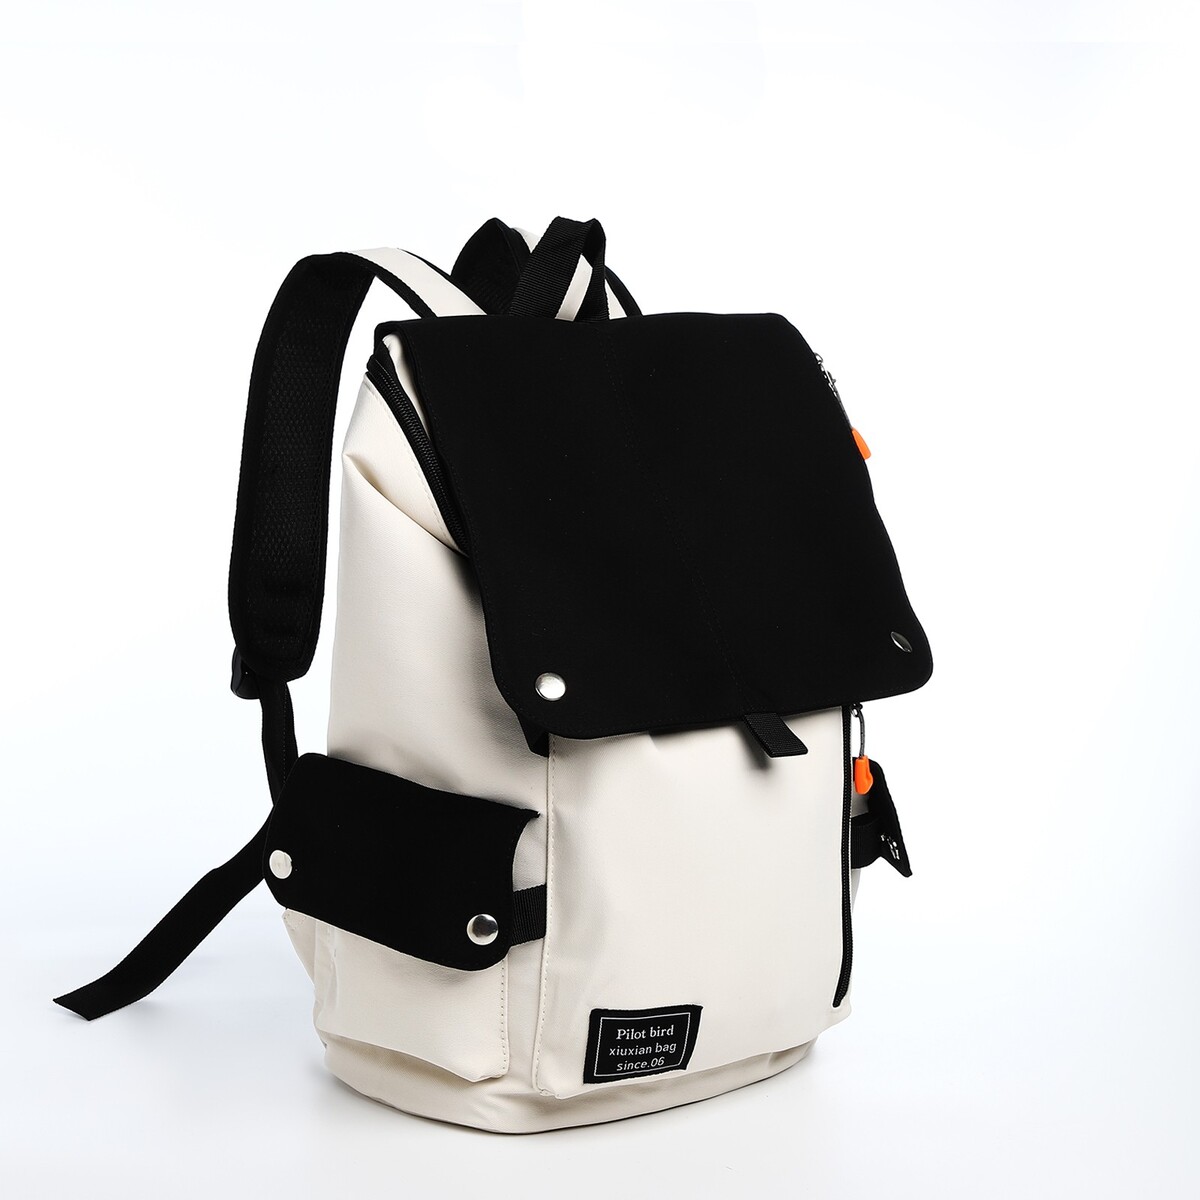 Рюкзак на молнии, 5 наружных кармана, цвет бежевый/черный рюкзак школьный из текстиля на молнии 4 кармана кошелек бежевый